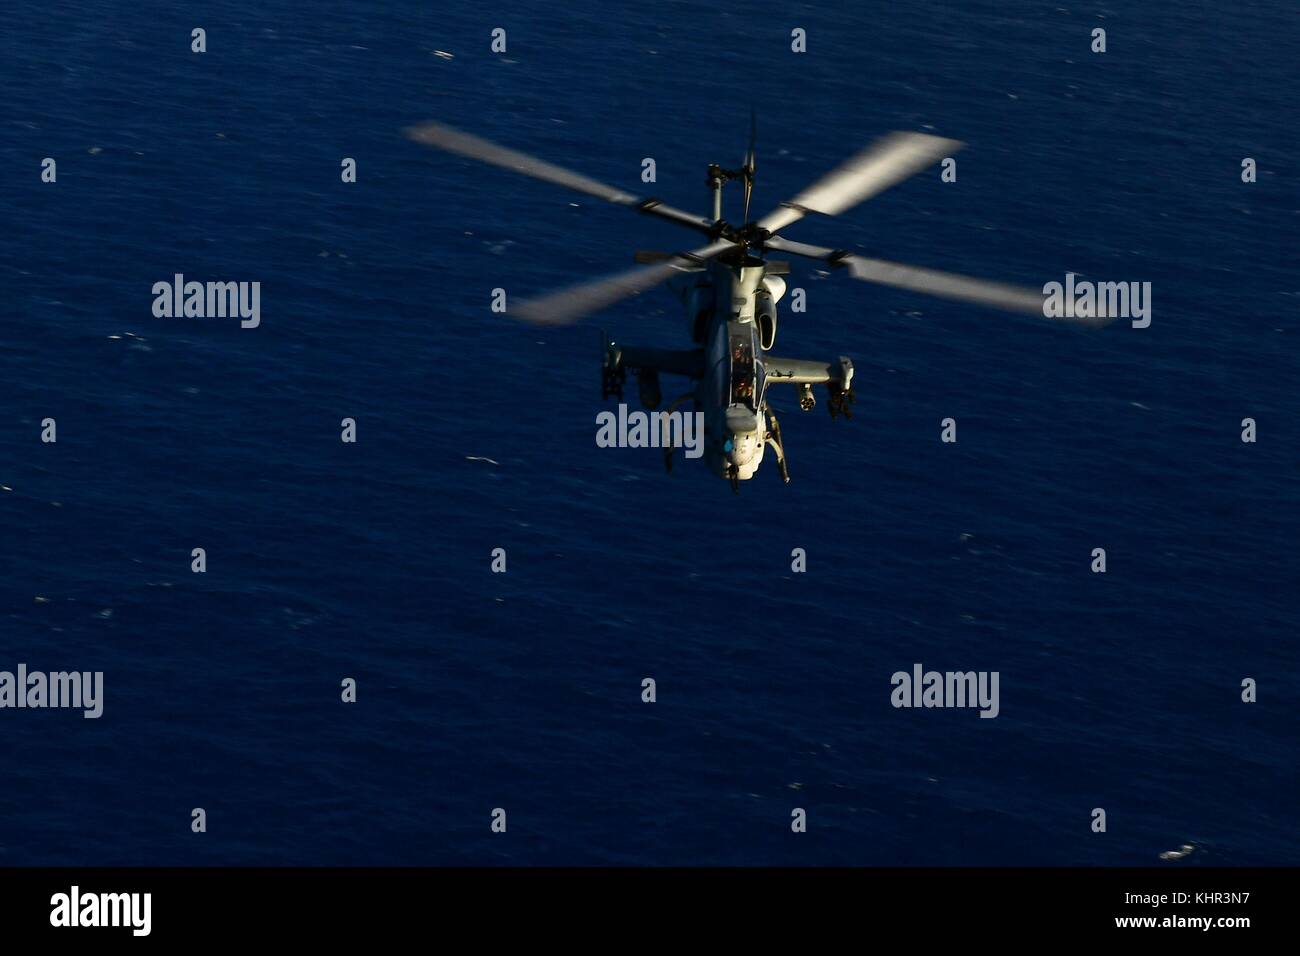 Un US Marine Corps ah-1z viper attacco elicottero sorvola la marina degli Stati Uniti san antonio-classe di trasporto anfibio dock nave USS San Diego il 28 ottobre 2017 nel mar Mediterraneo. (Foto di Justin a. schoenberger via planetpix) Foto Stock